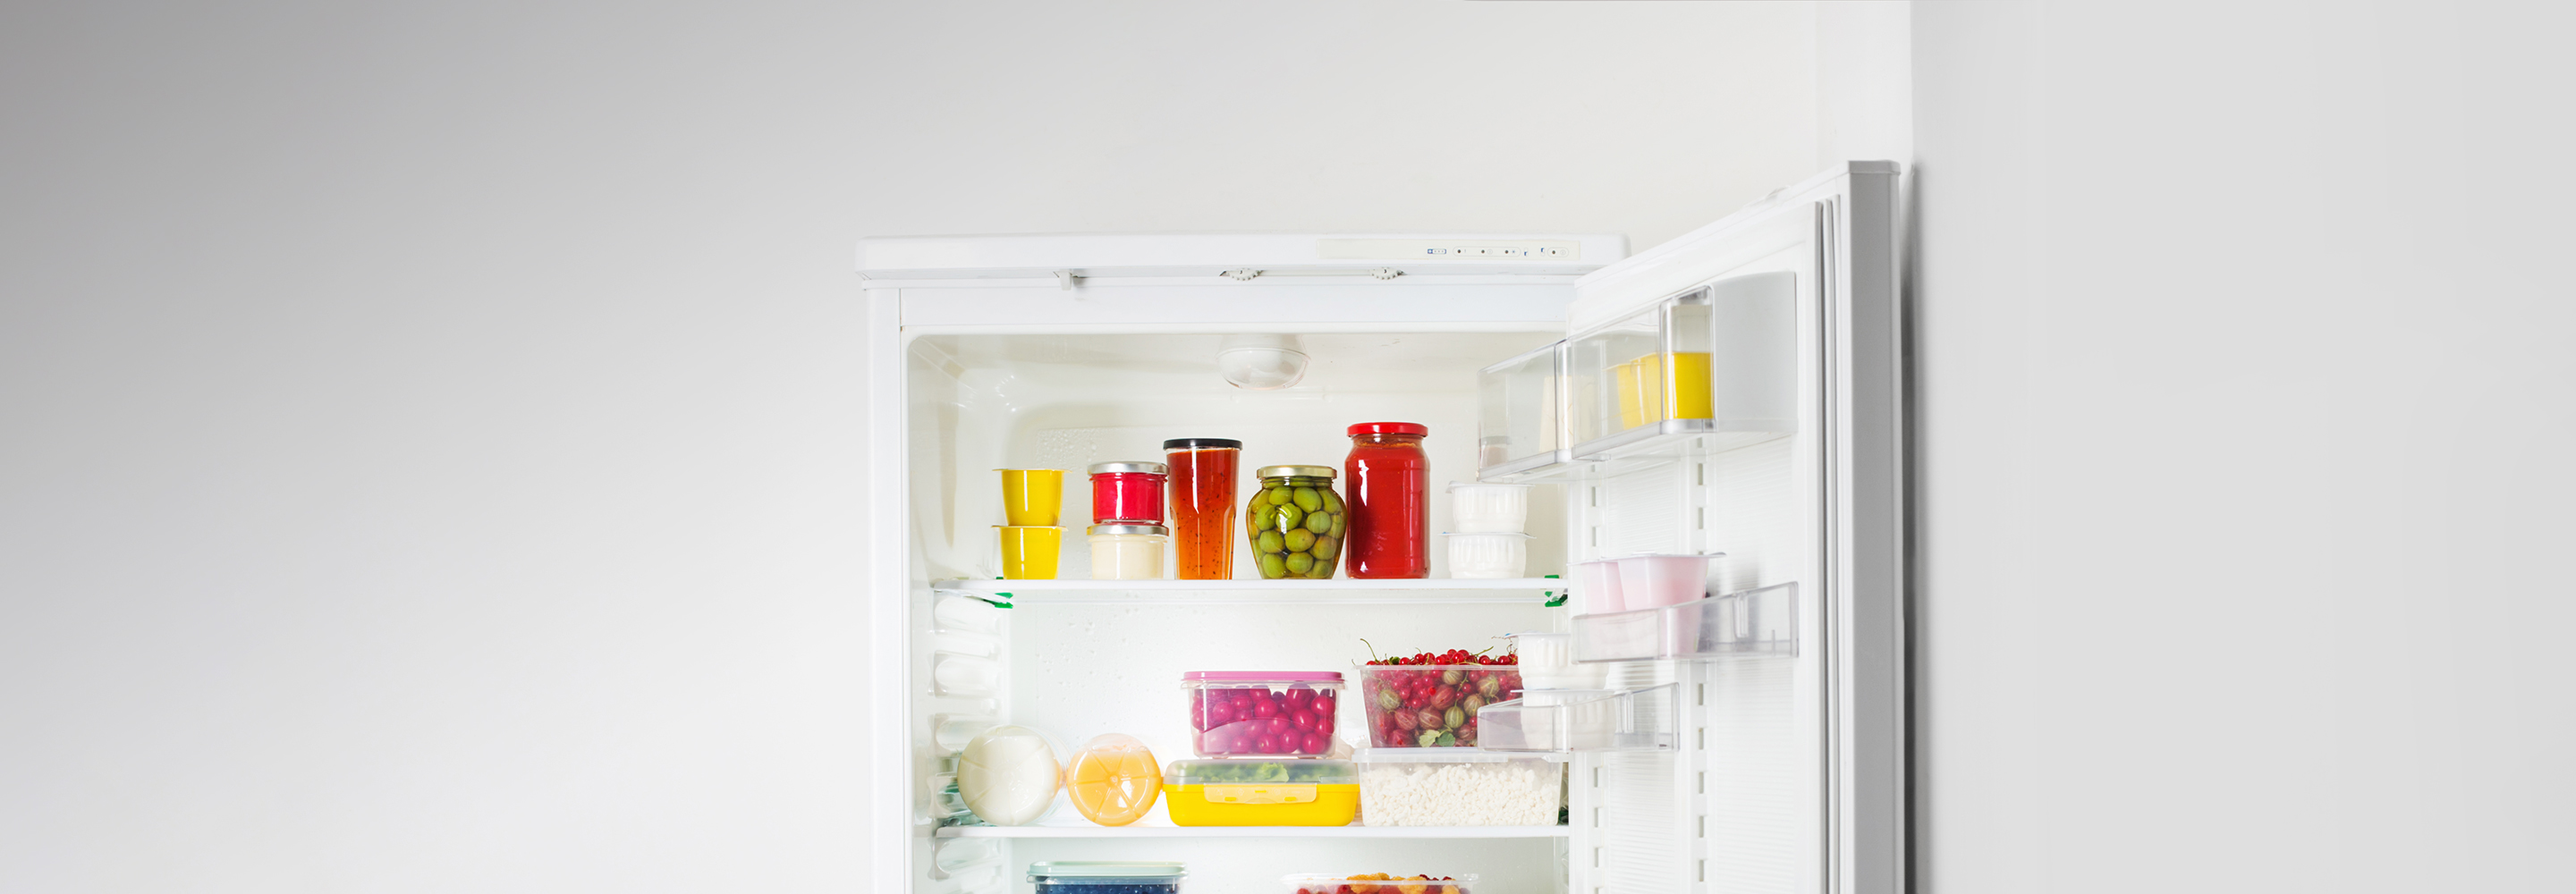 «Яйца нужно хранить на полке дверцы» и еще 6 мифов о хранении в холодильнике